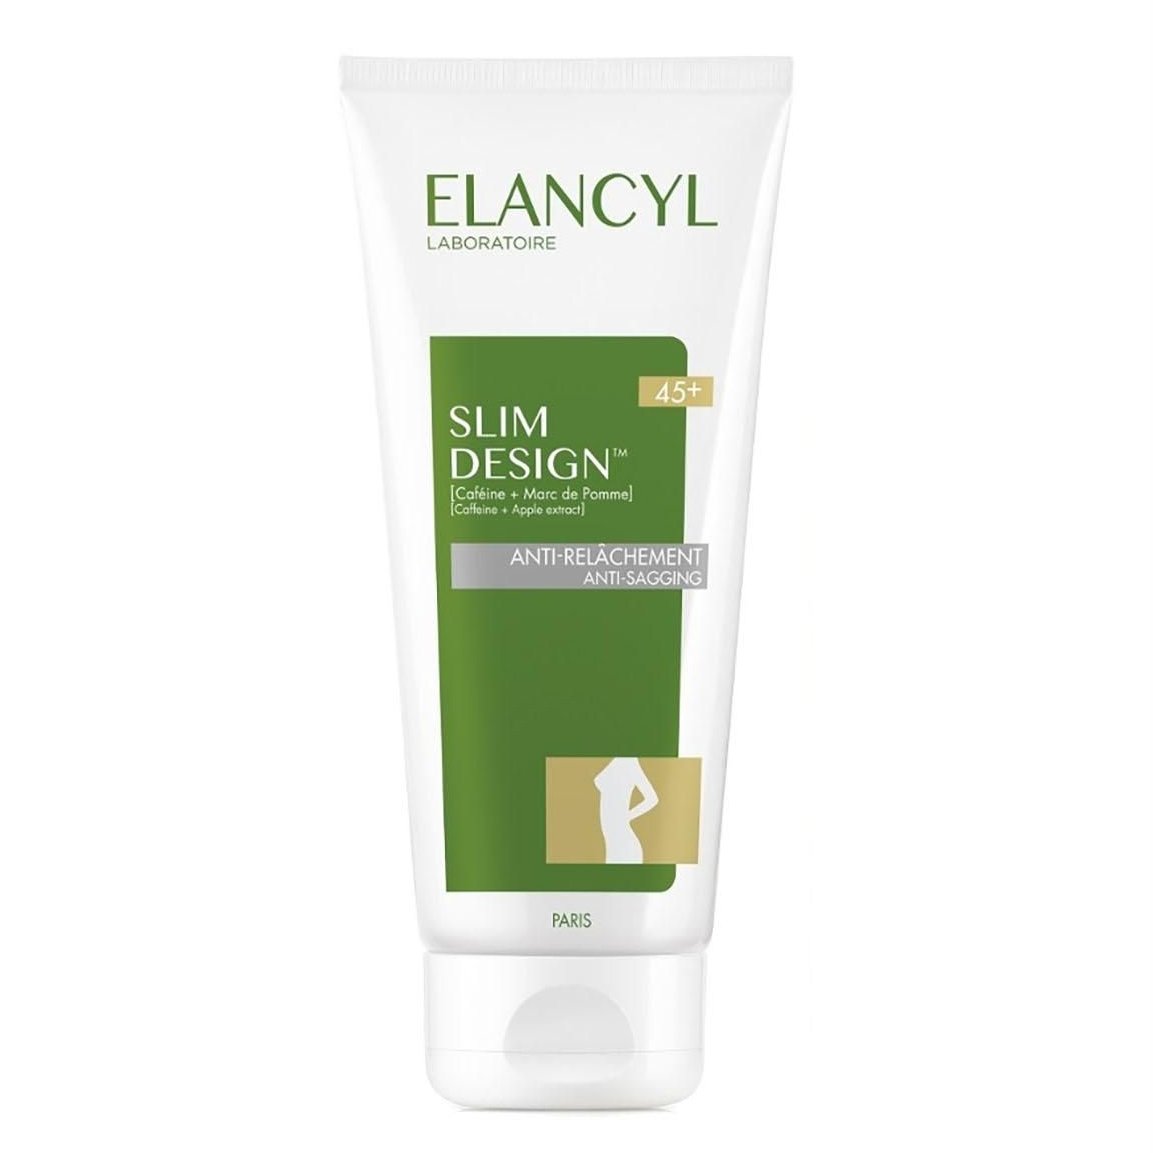 Elancyl Slim Design Anti-Sagging Body Cream 45+ Κρέμα Σώματος για την Αντιμετώπιση της Χαλάρωσης & της Κυτταρίτιδας 200ml 7675